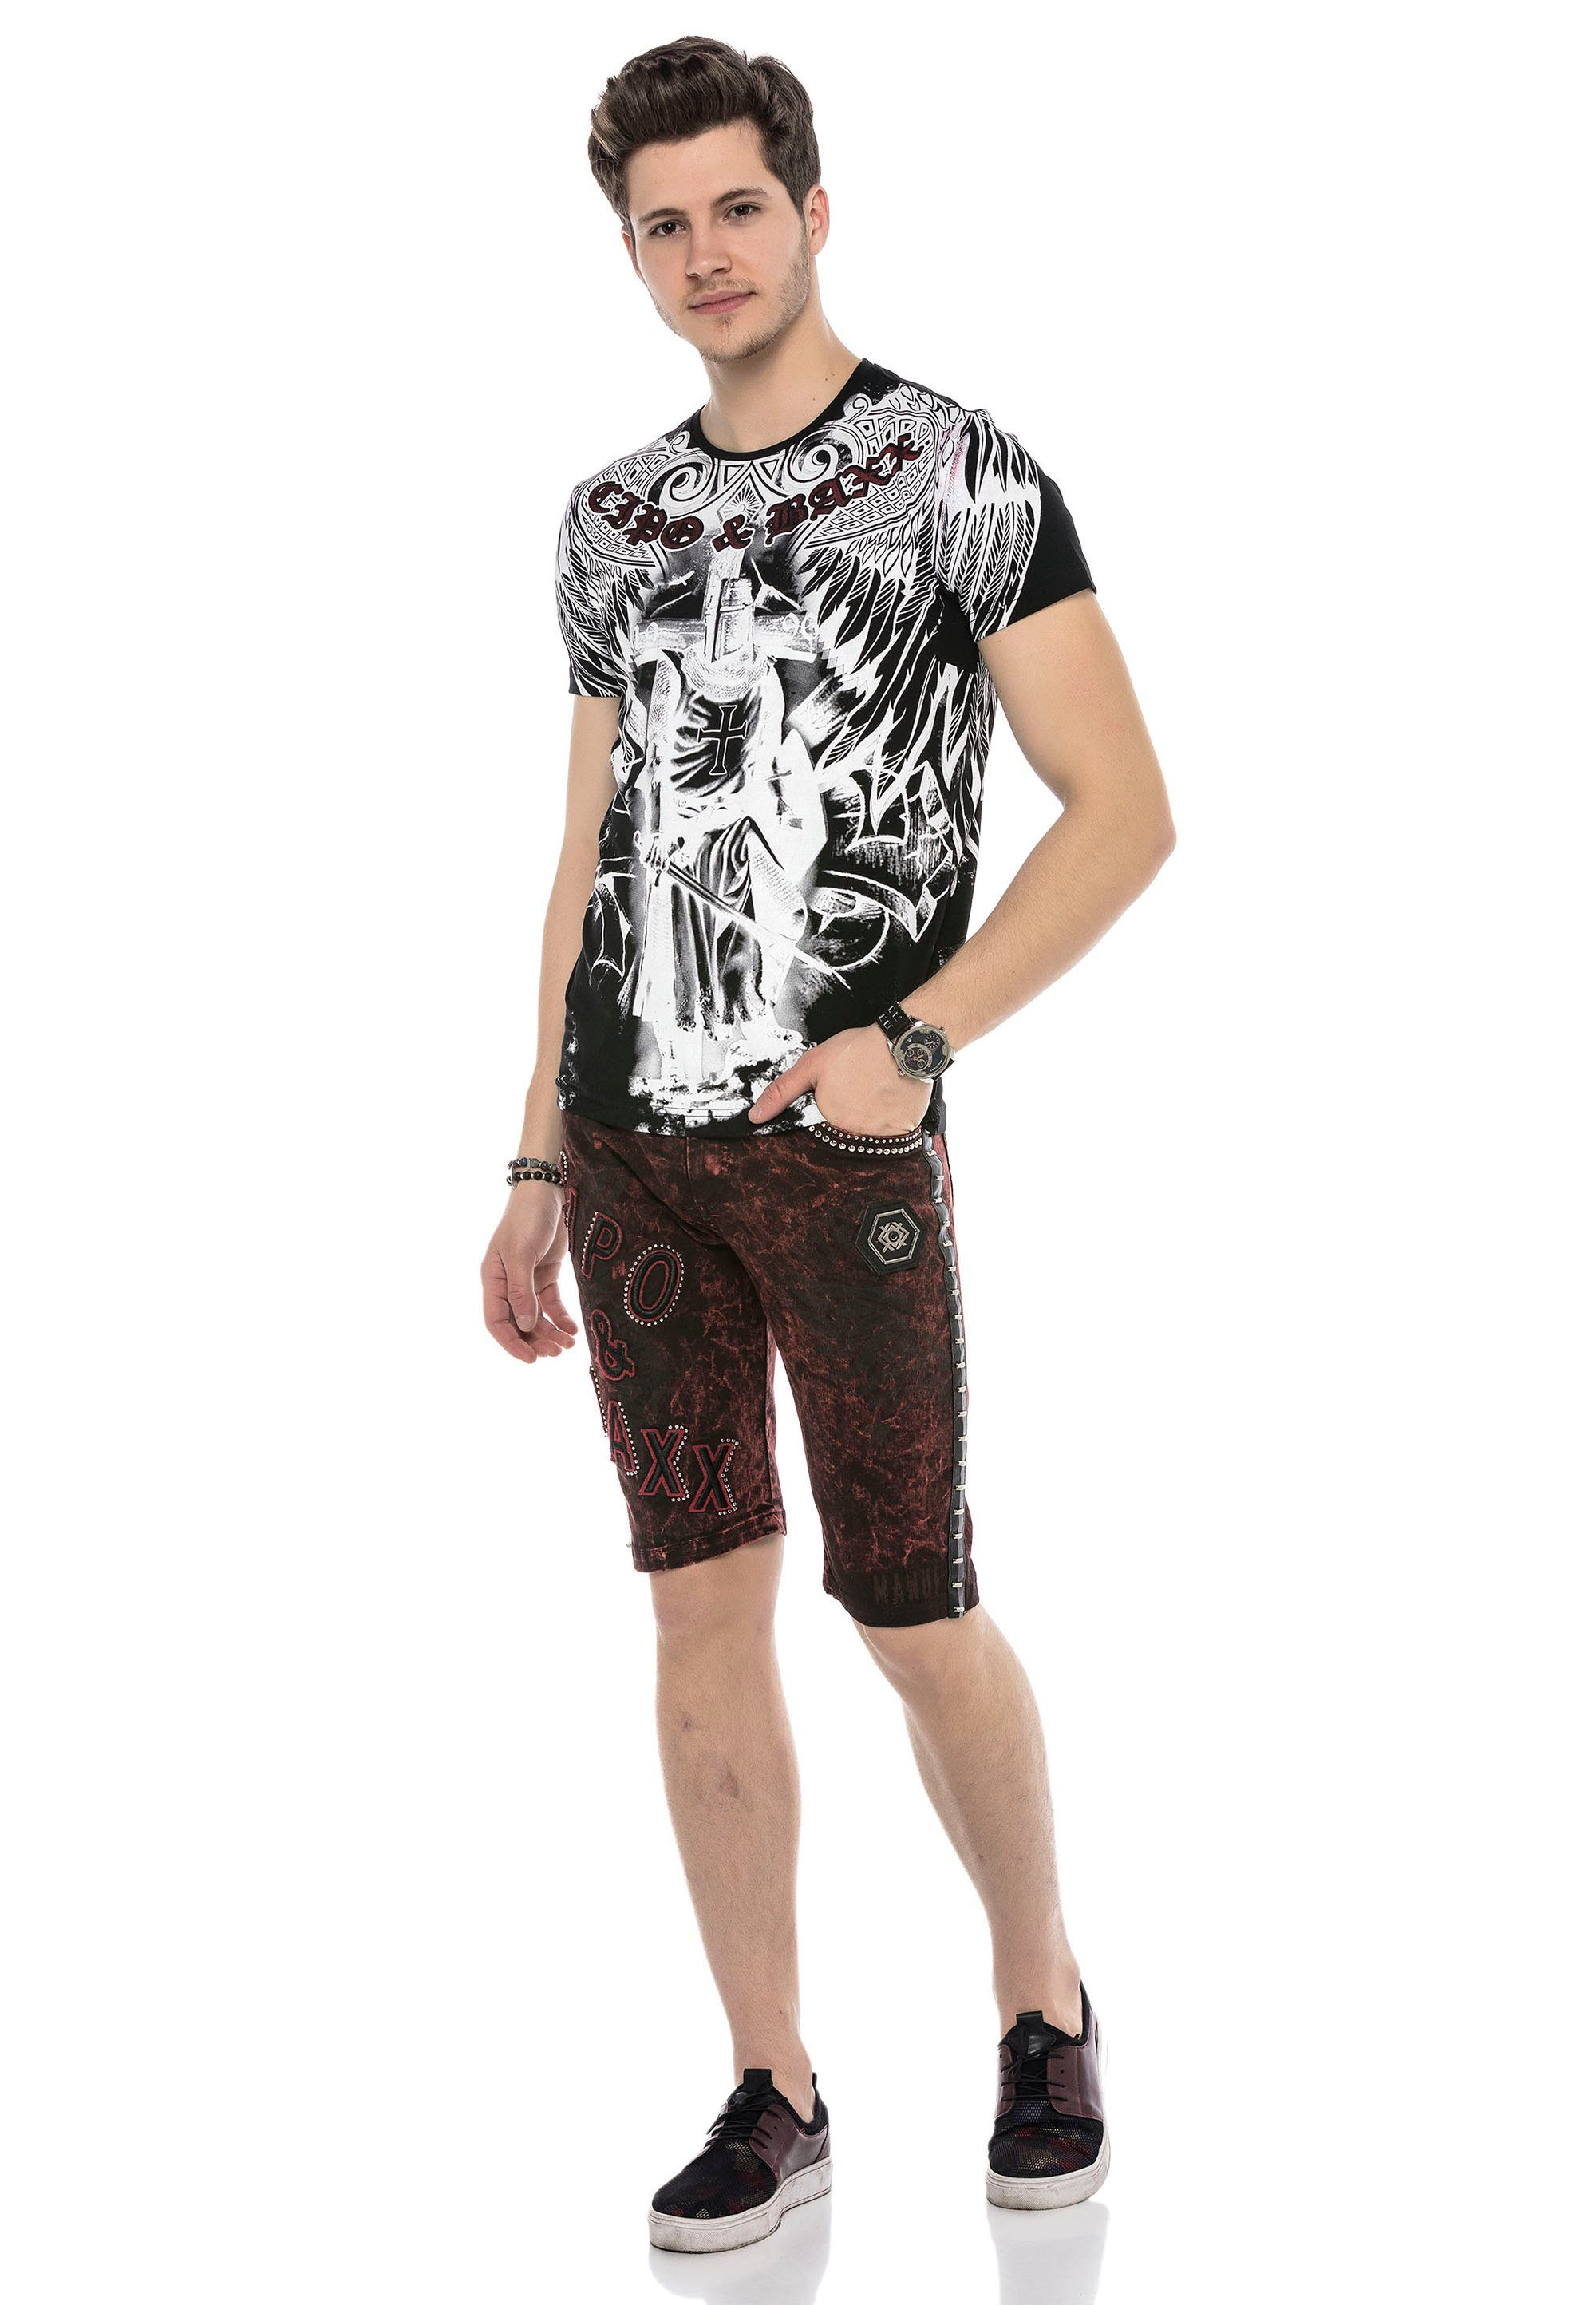 Baxx schwarz-weiß Cipo mit & grafischem T-Shirt Print